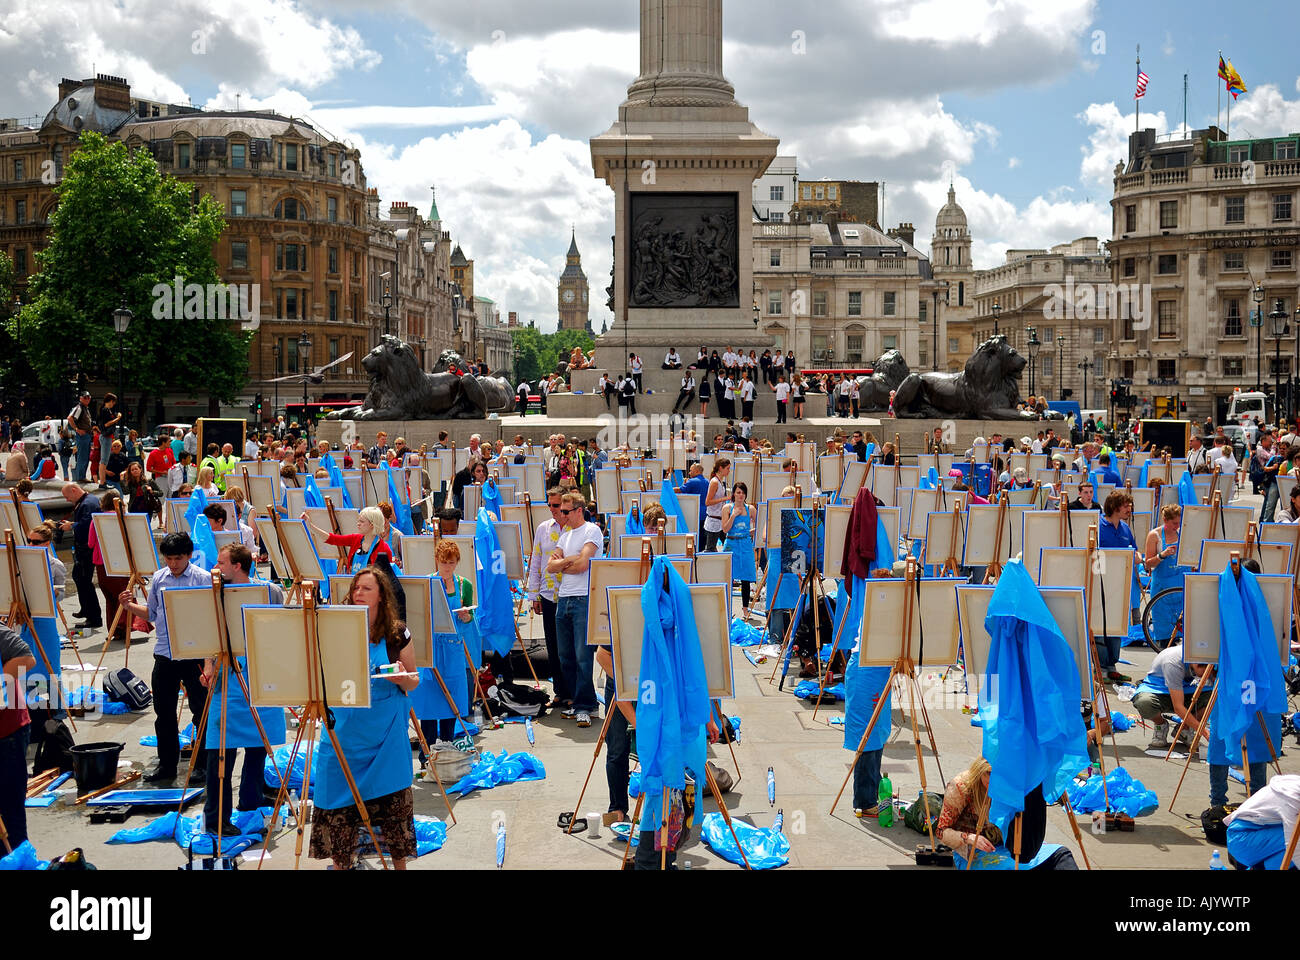 Ciel bleu peinture Journée festival à Trafalgar Square, Londres. Banque D'Images